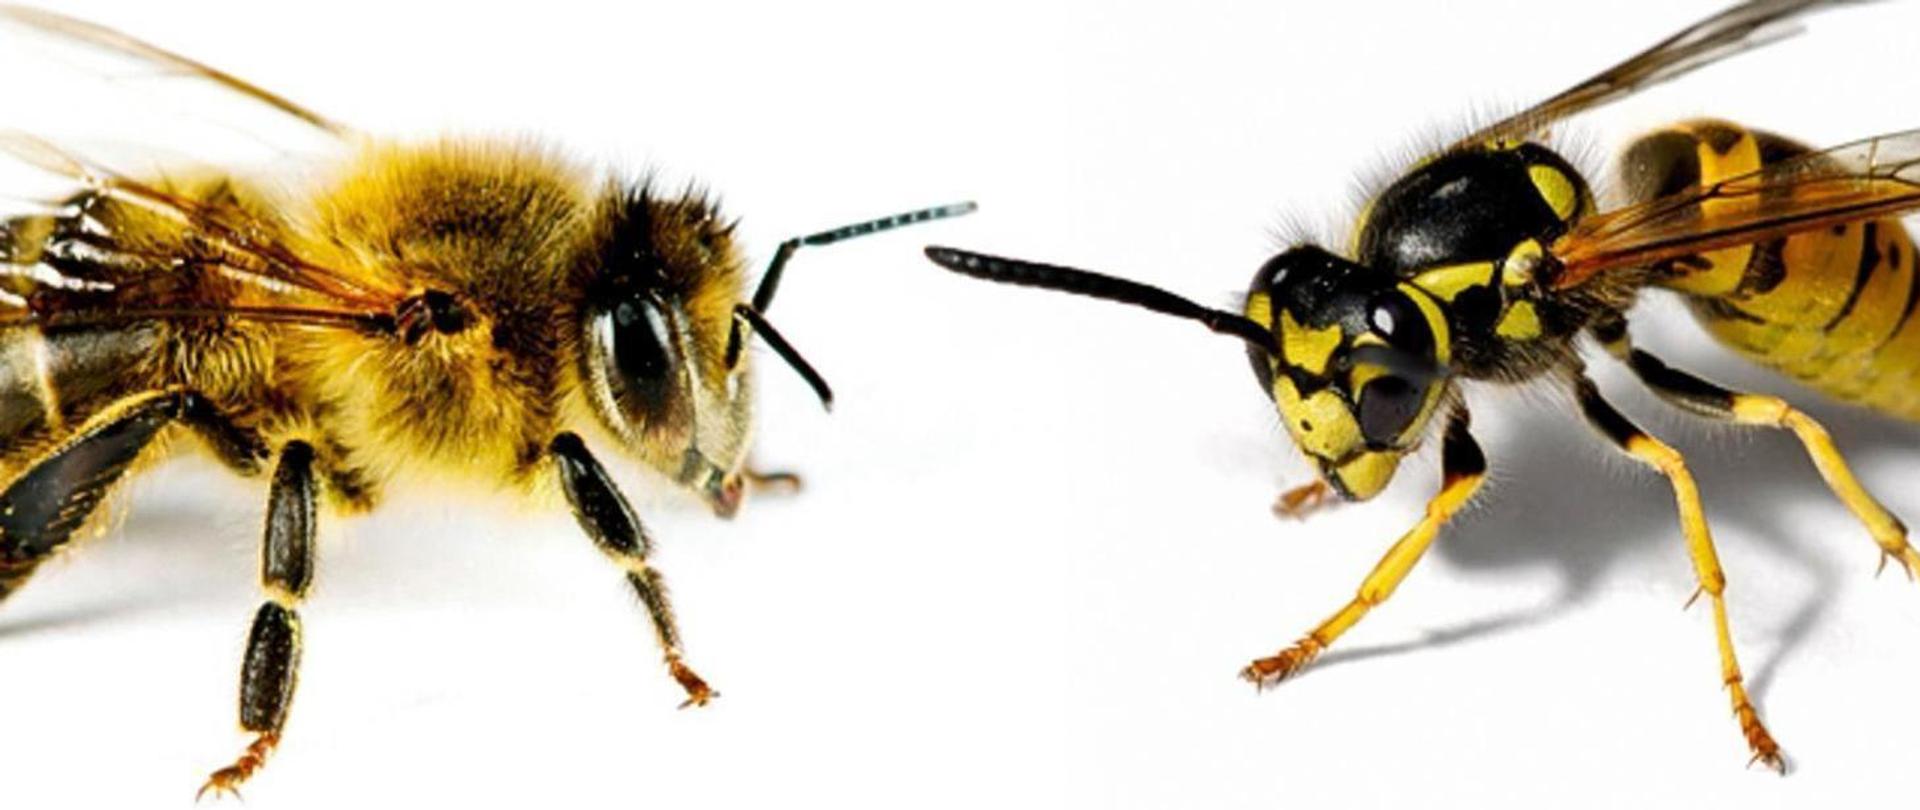 Osa i pszczoła